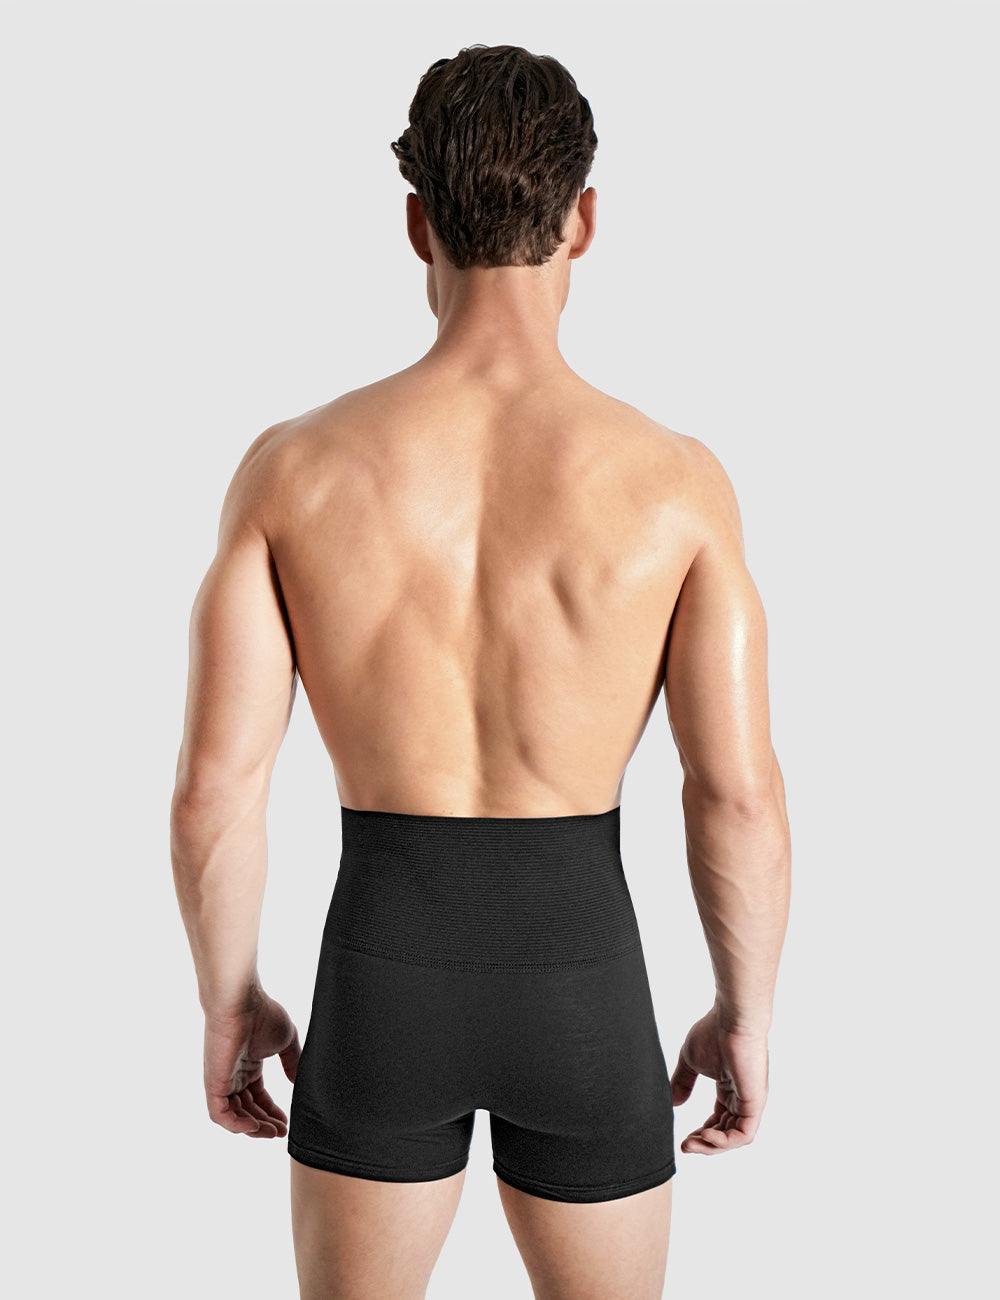 Men Tummy Control Shorts Hi-Waist Underwear Slimming Body Shaper Boxer  Briefs US